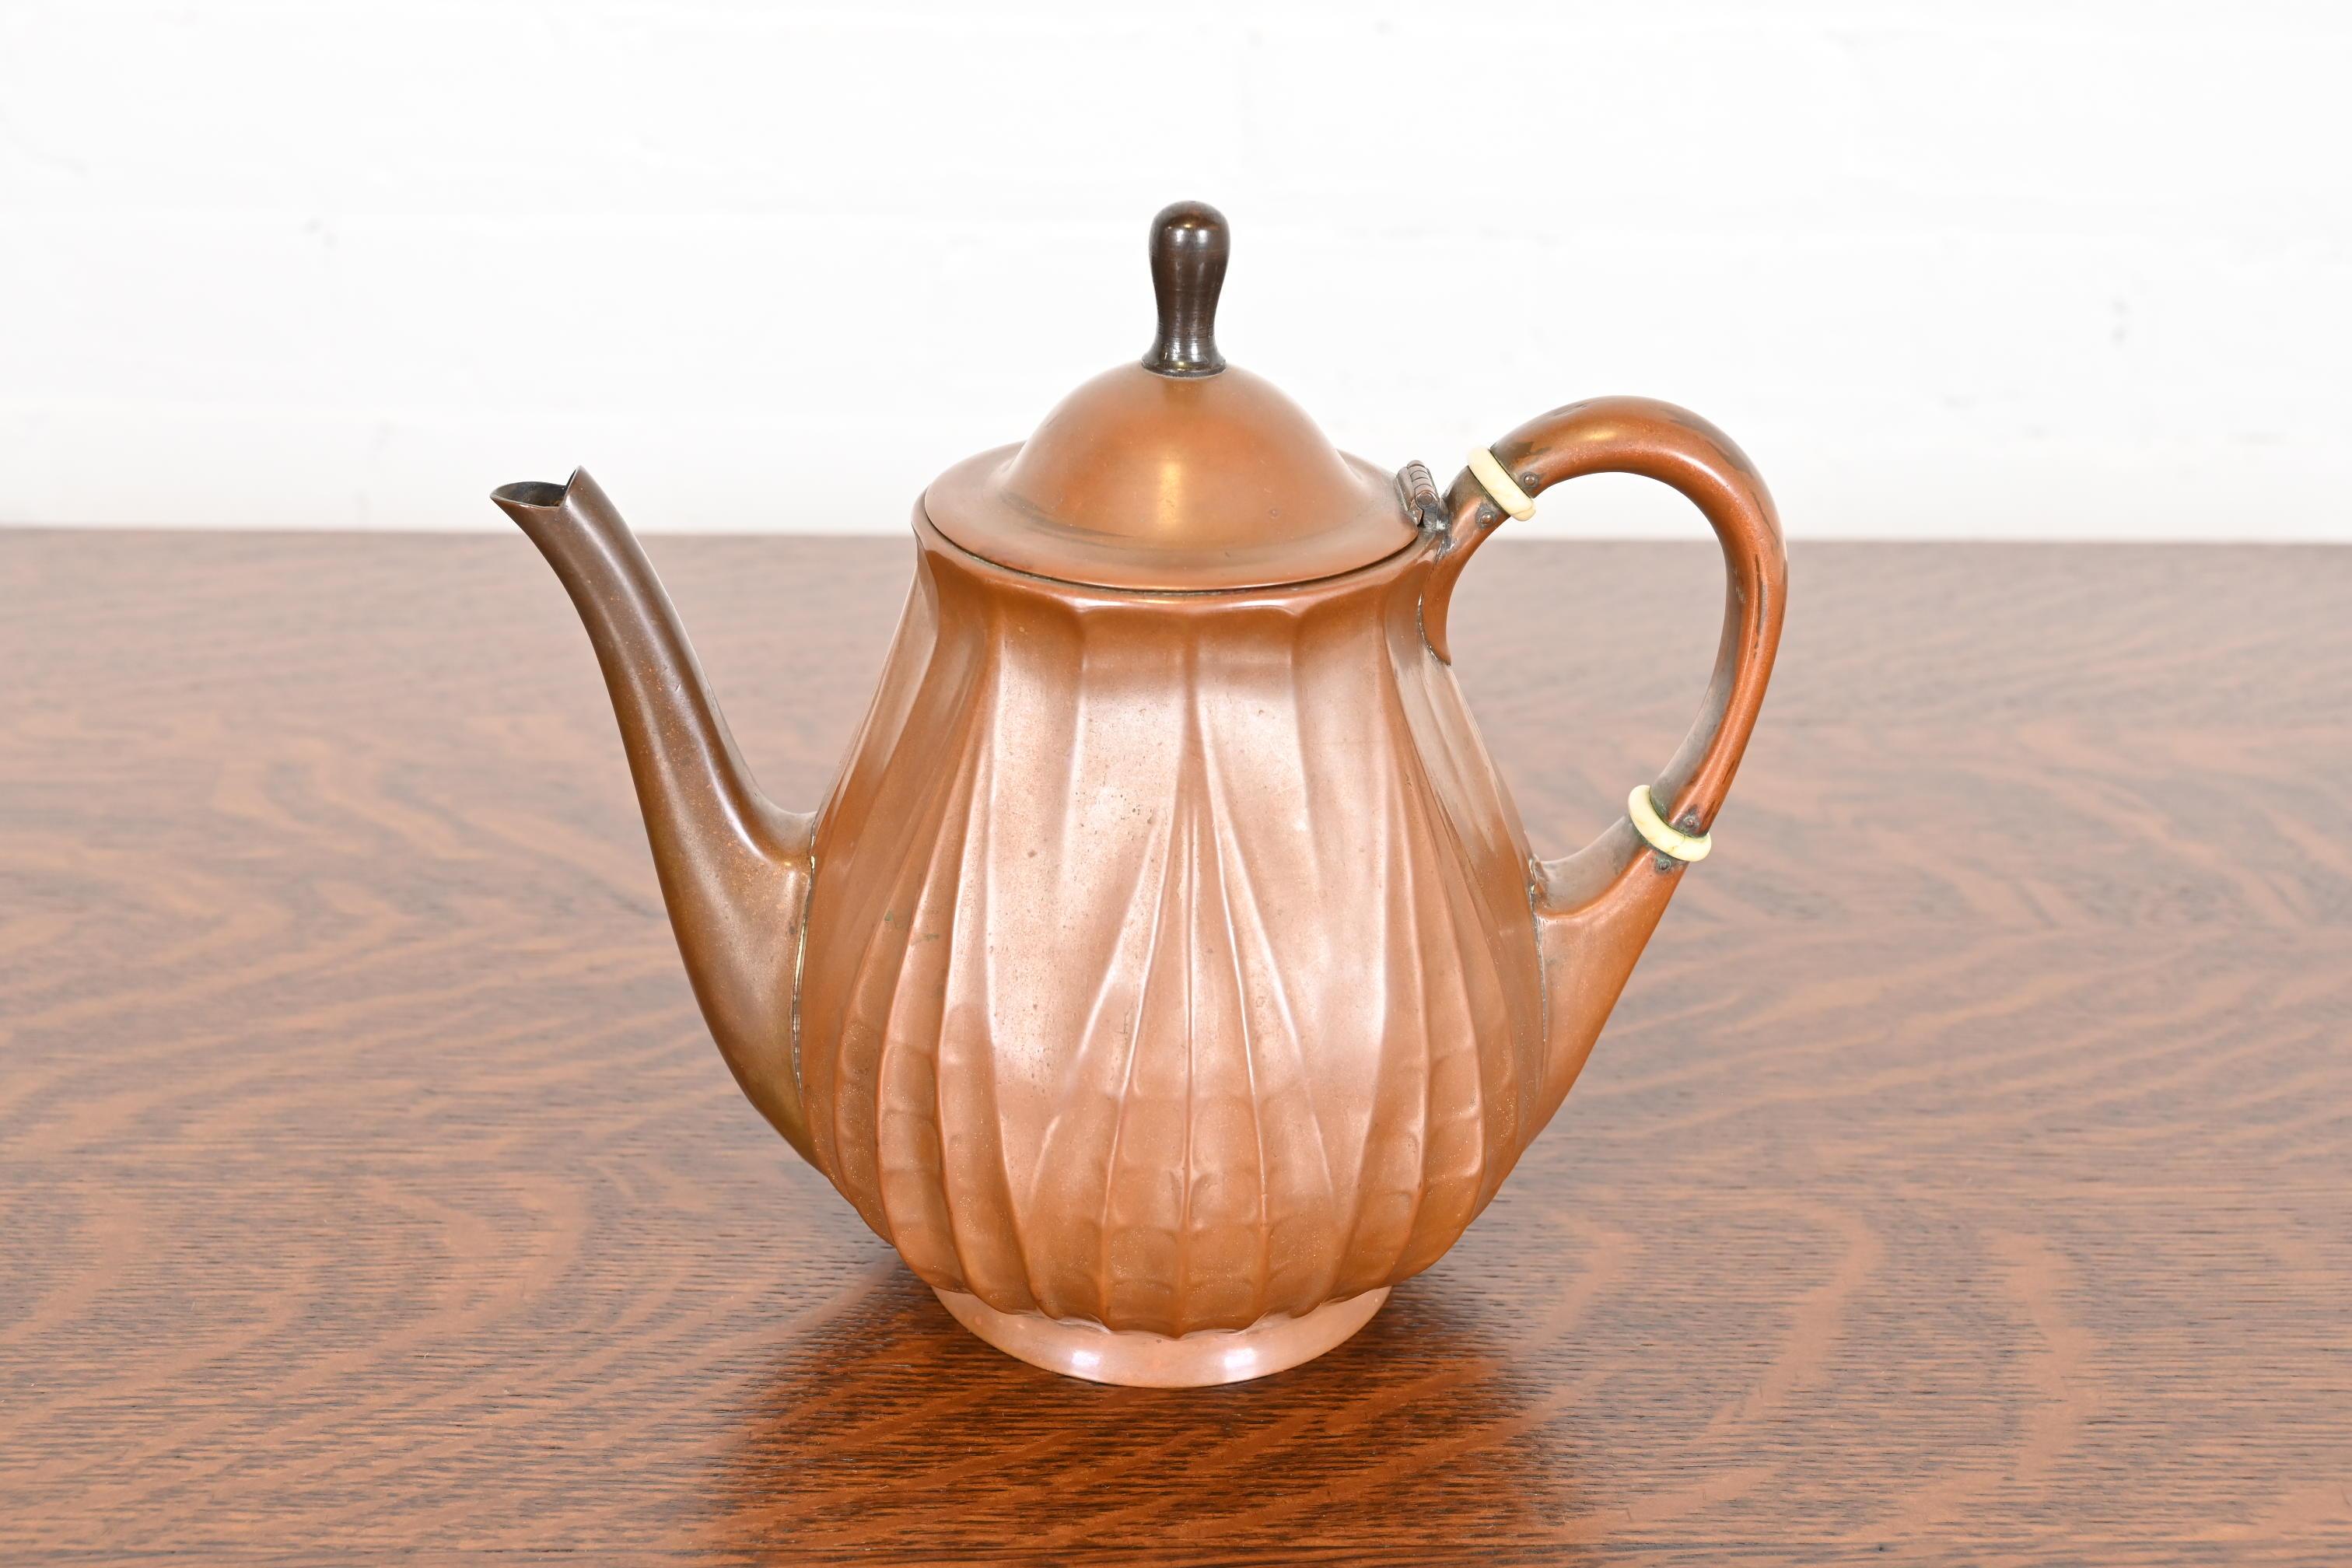 Ein prächtiger Teekessel aus Kupfer aus der Zeit des Arts & Crafts

Von Tiffany Studios (signiert auf der Unterseite)

USA, ca. 1910

Maße: 8,5 